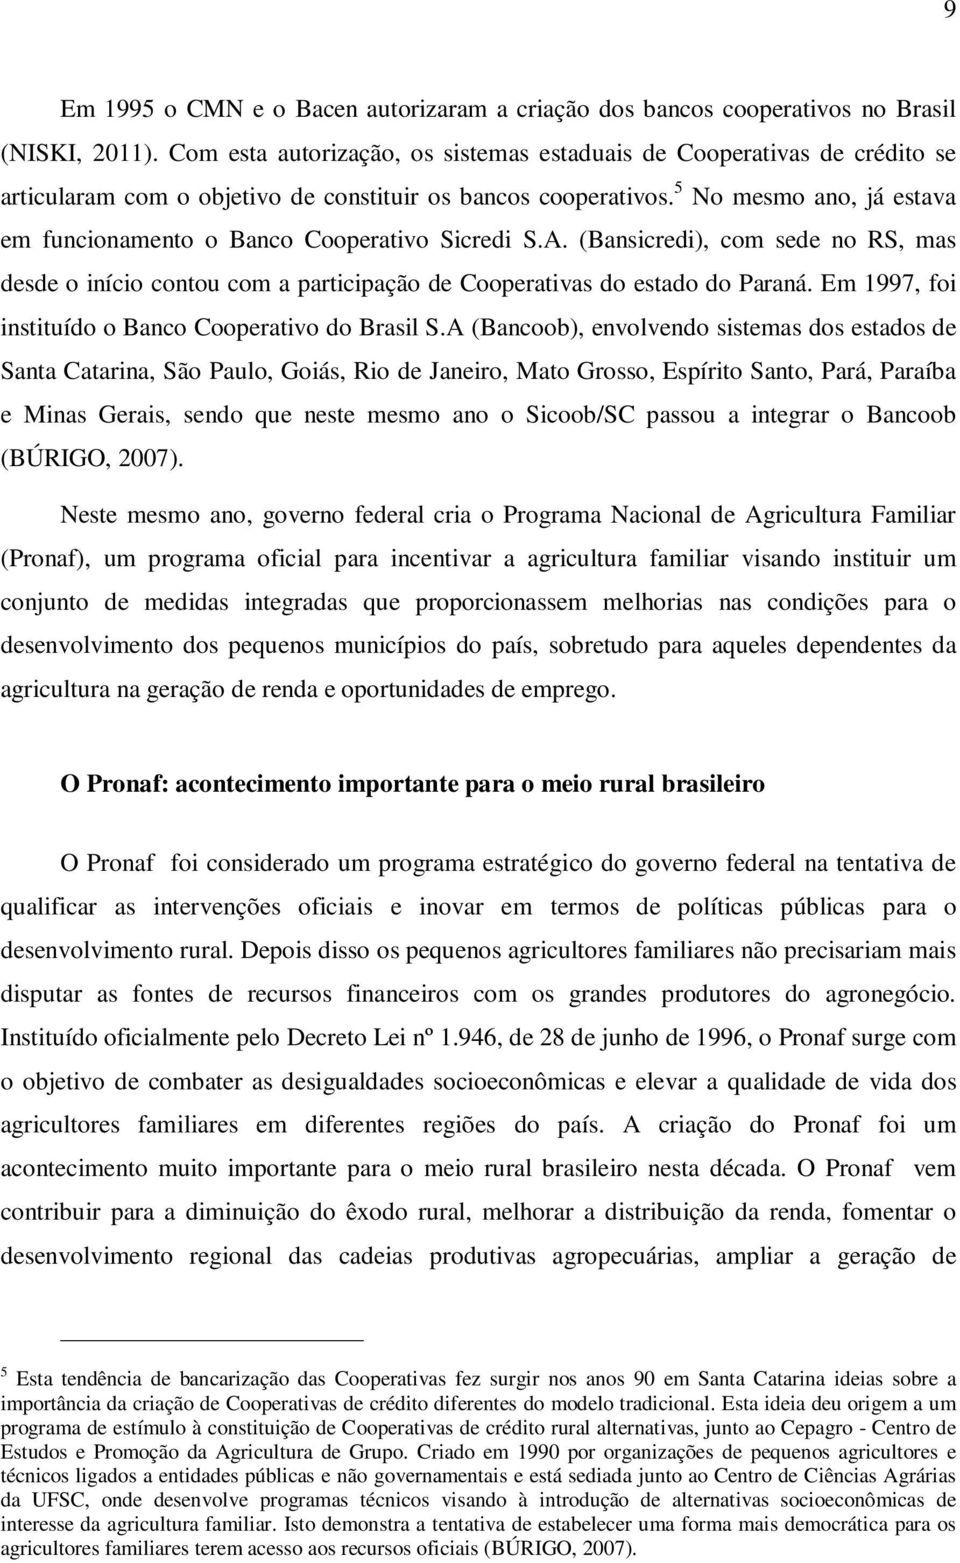 5 No mesmo ano, já estava em funcionamento o Banco Cooperativo Sicredi S.A. (Bansicredi), com sede no RS, mas desde o início contou com a participação de Cooperativas do estado do Paraná.